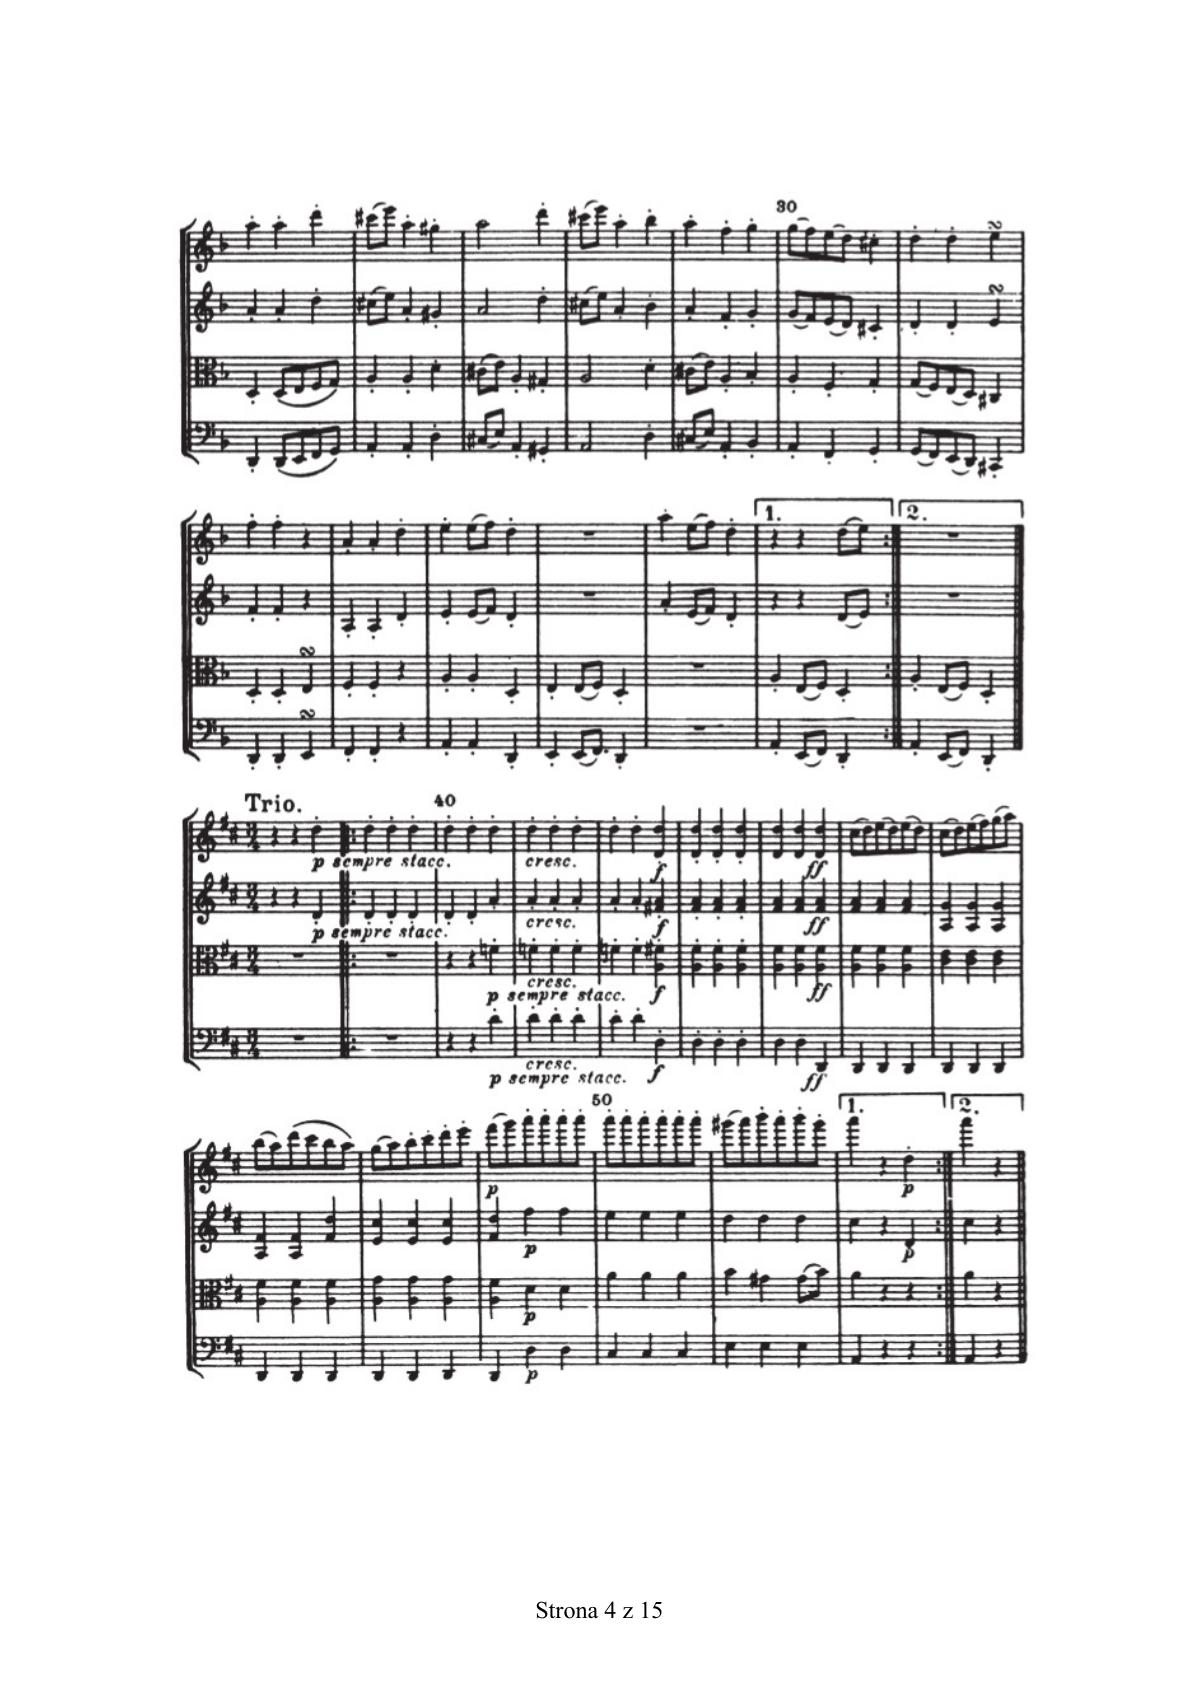 zadanie 16 - Joseph Haydn, Kwartet smyczkowy d-moll op. 76 nr 2, cz. III - fragment-2